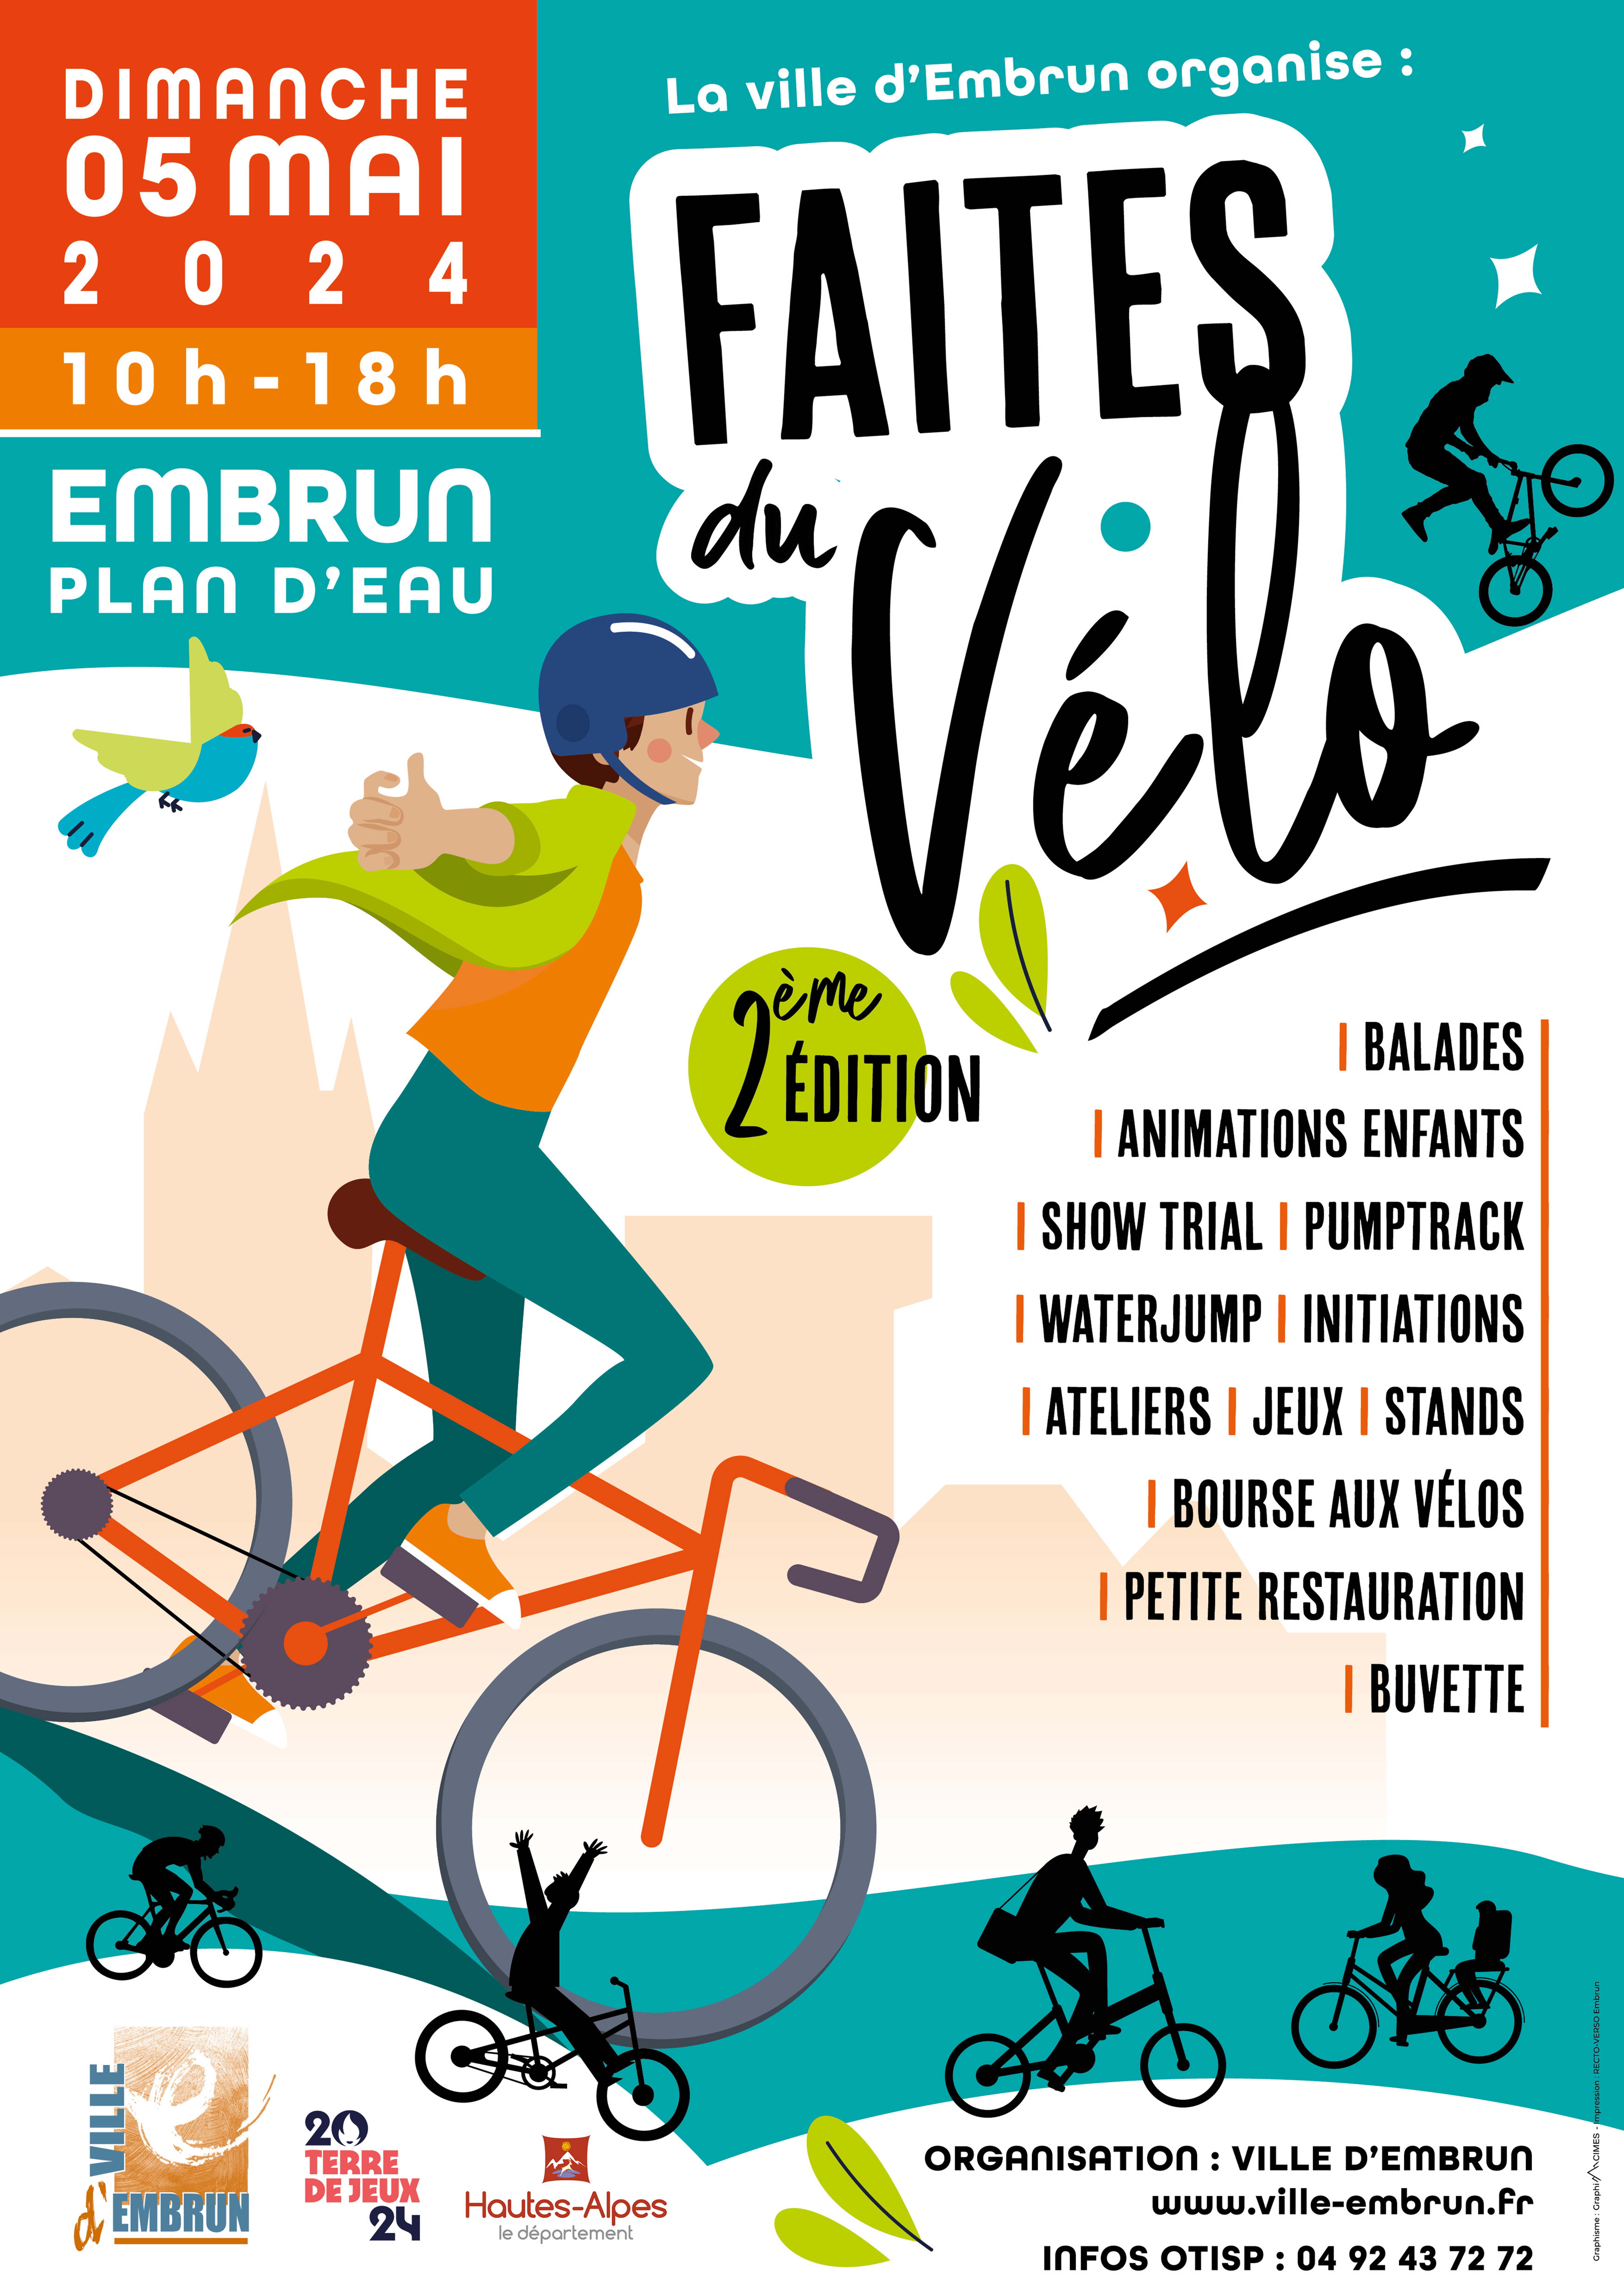 Faites du vélo 2ème édition EMB